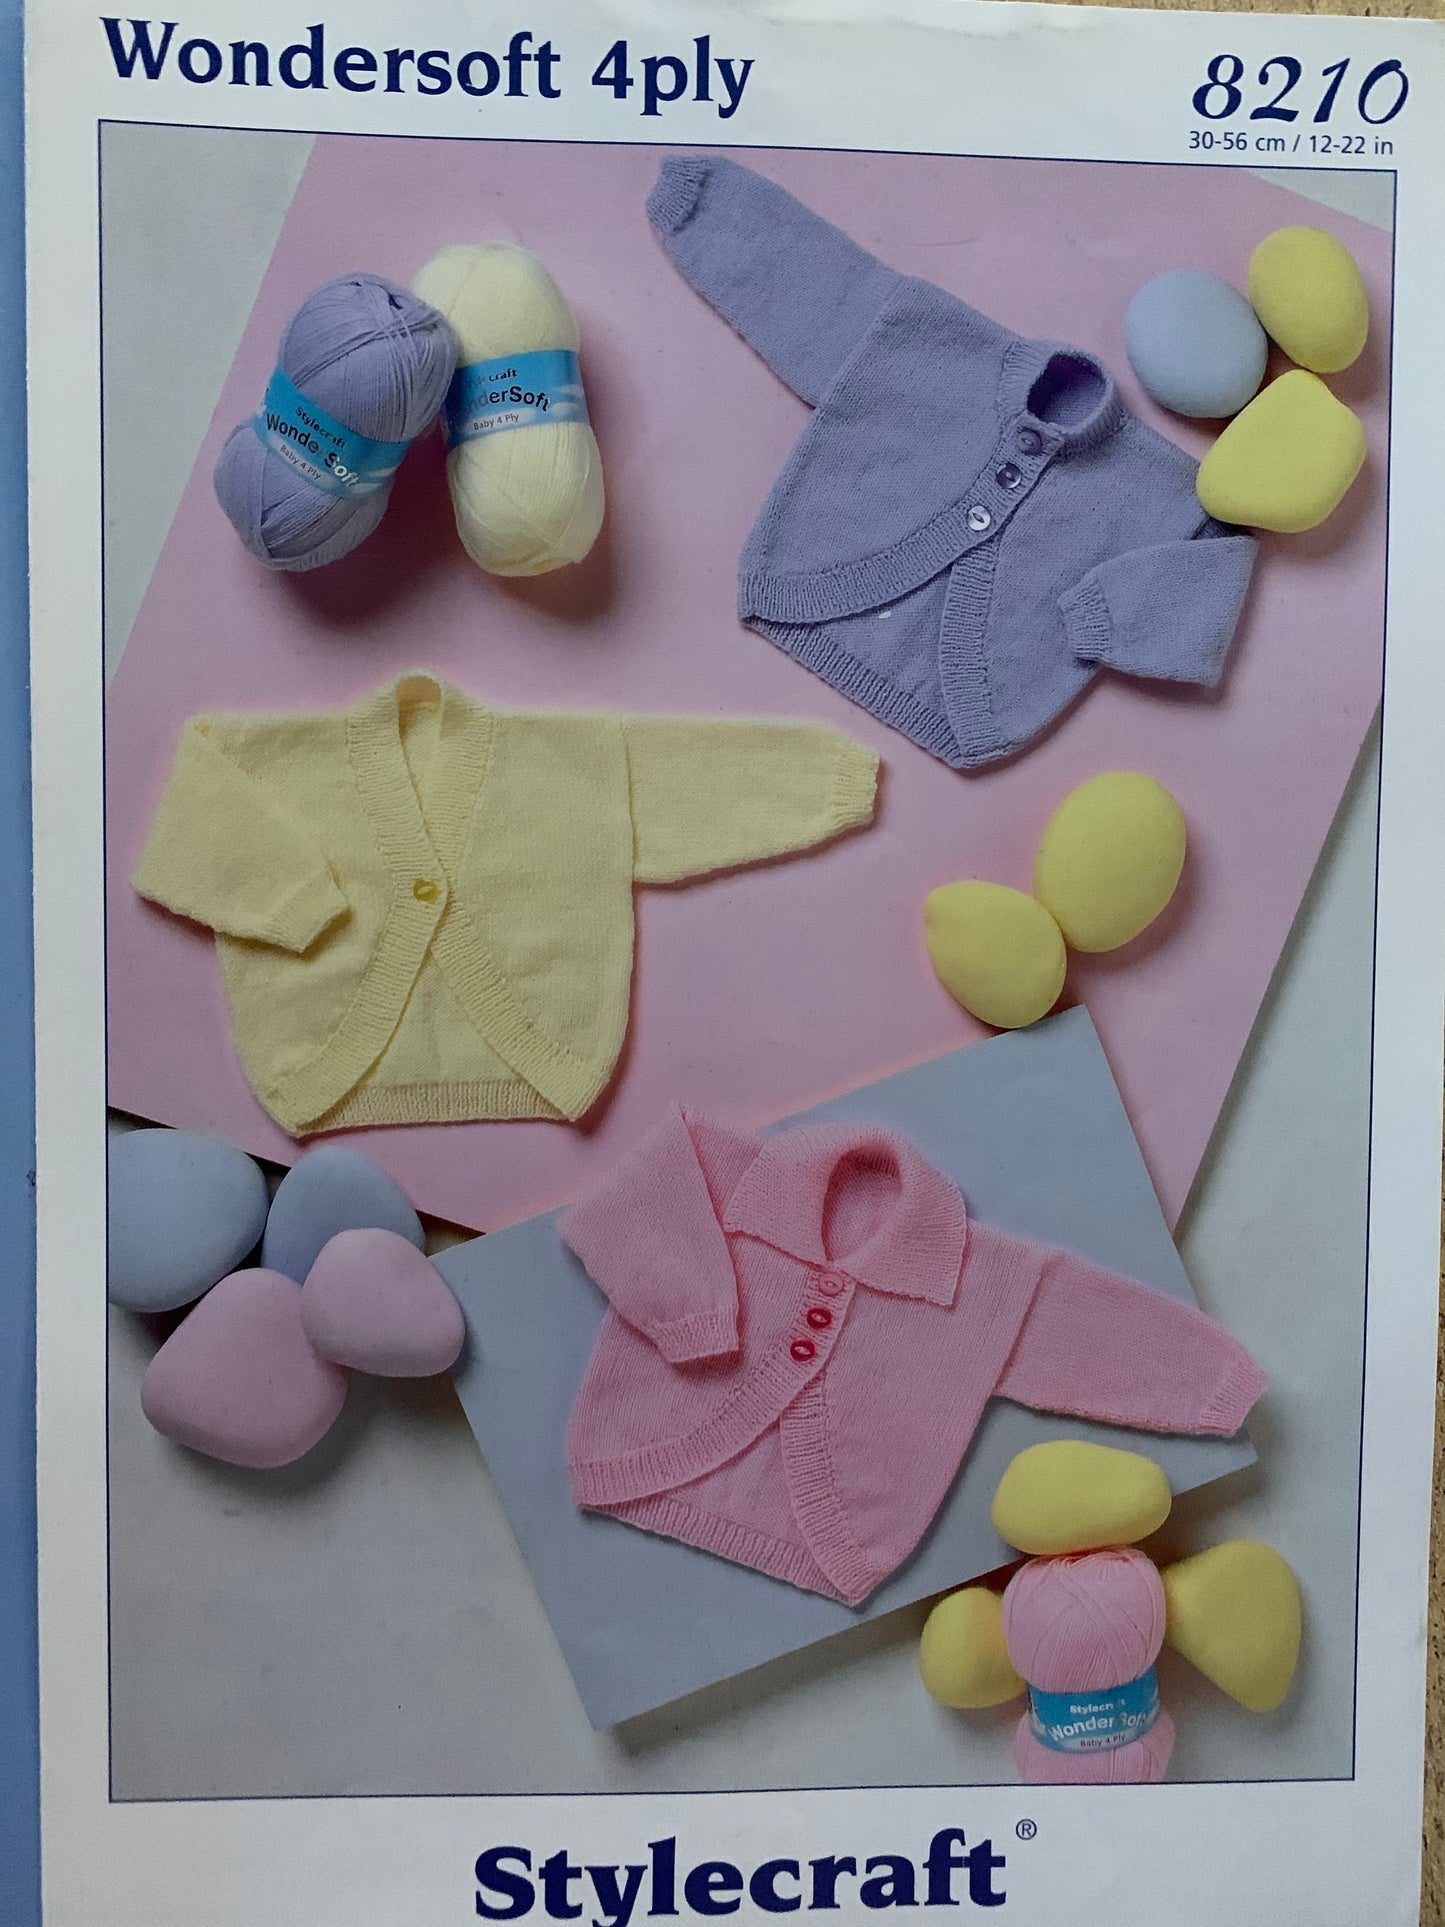 8210 Stylecraft Wondersoft 4ply baby boleros cardigans knitting pattern